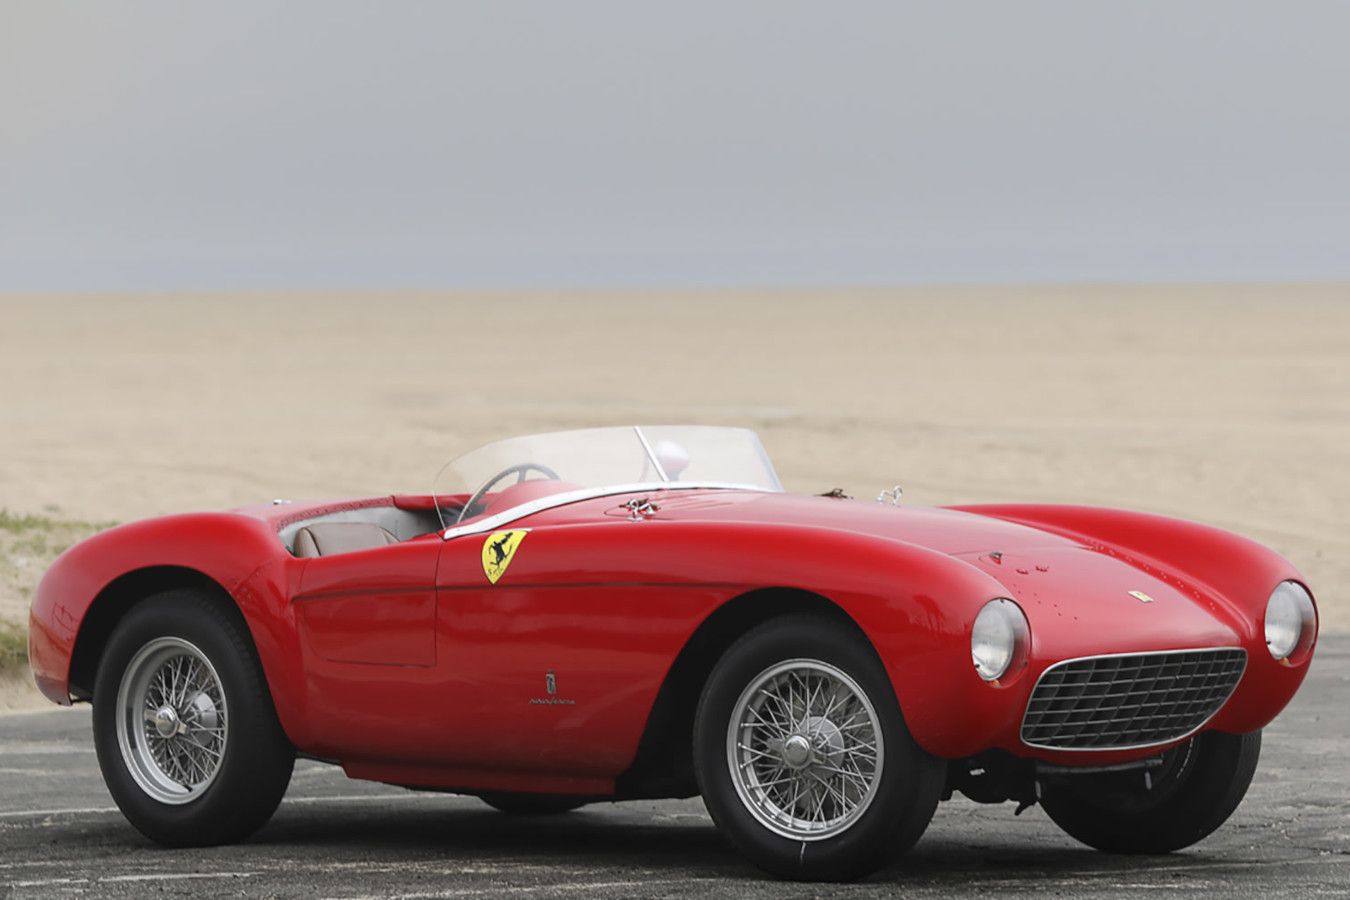 Редкая гоночная Ferrari 1954 года выставлена на аукцион. За неё хотят $ 5 млн